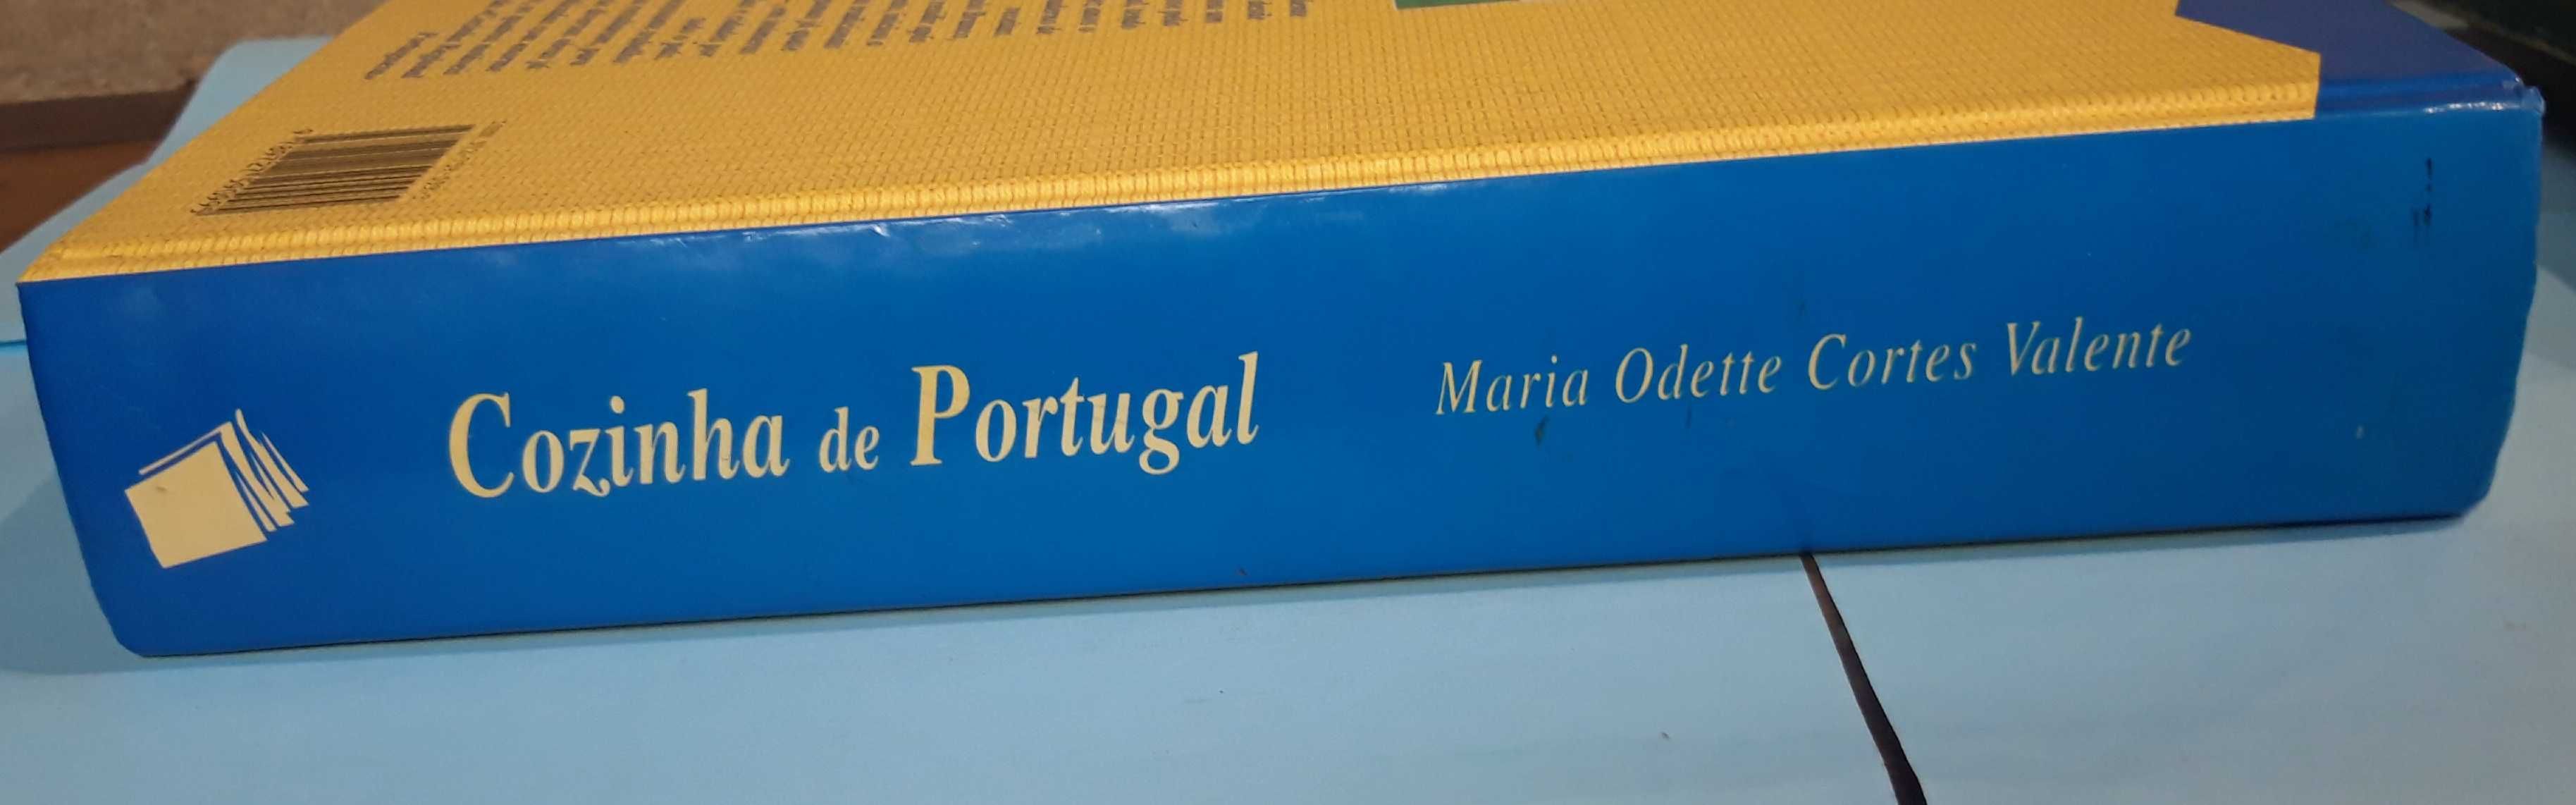 Livro - Cozinha de Portugal: Ribatejo/Estremadura/Alentejo/Algarve VSO